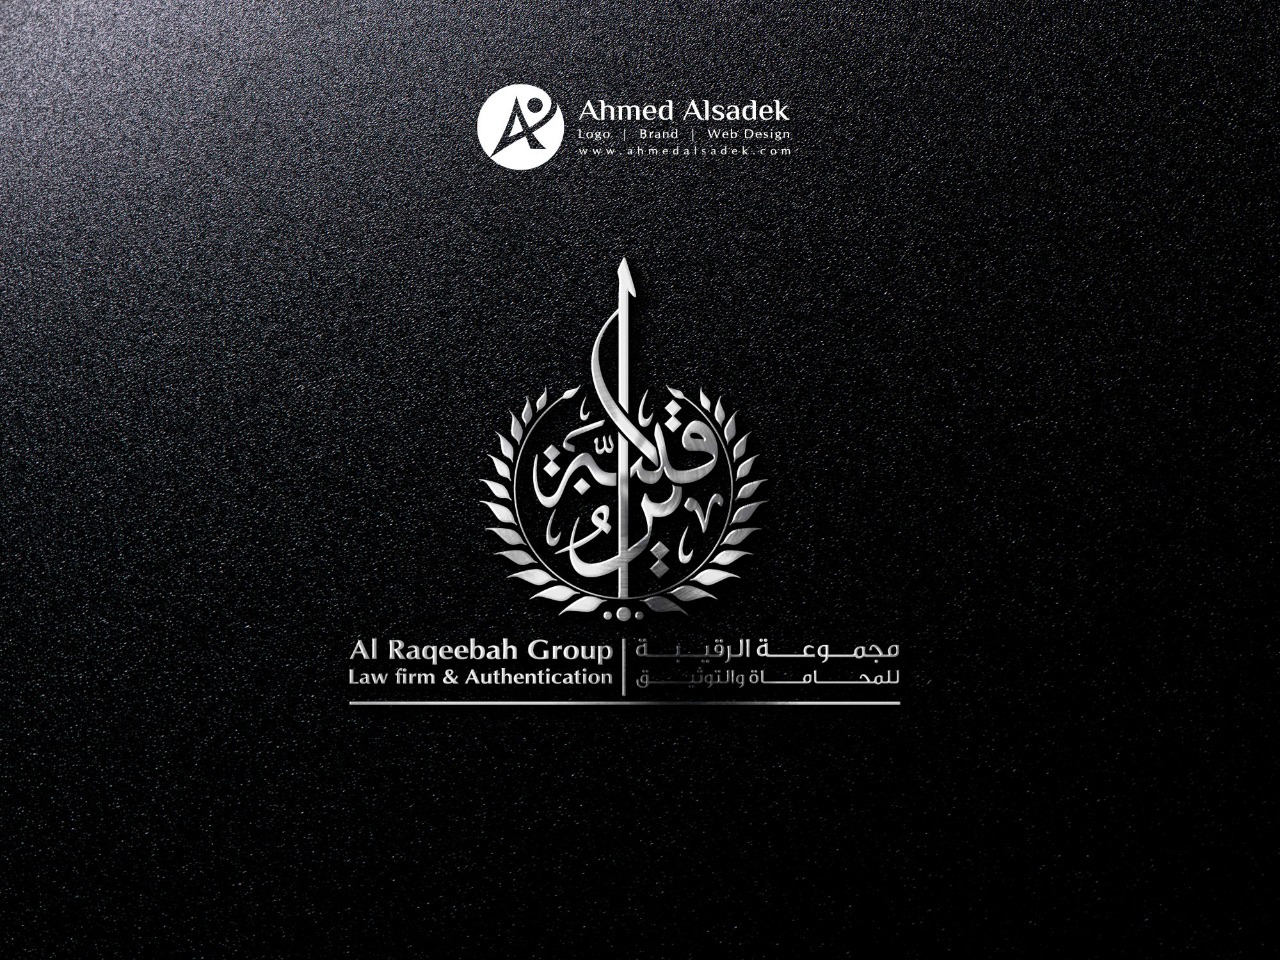 تصميم شعار مجموعة الرقيب للمحاماه في المدينة المنورة السعودية 3